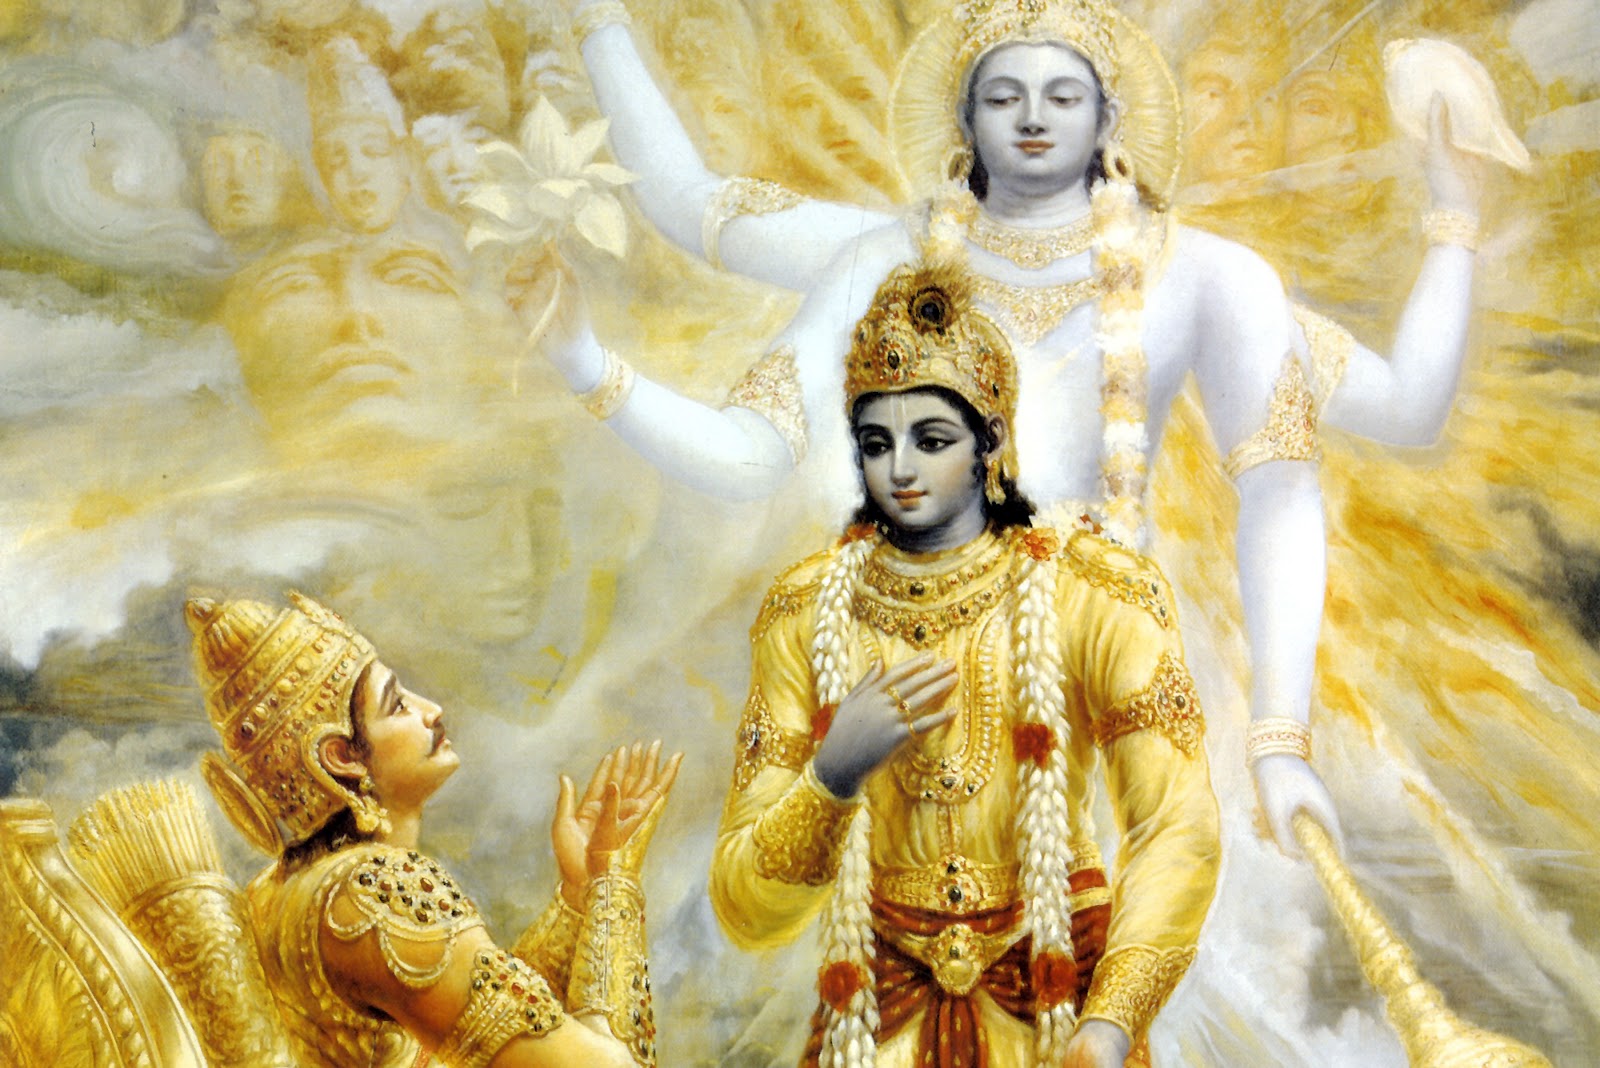 GOD HD Wallpapers: Krishna and Arjun